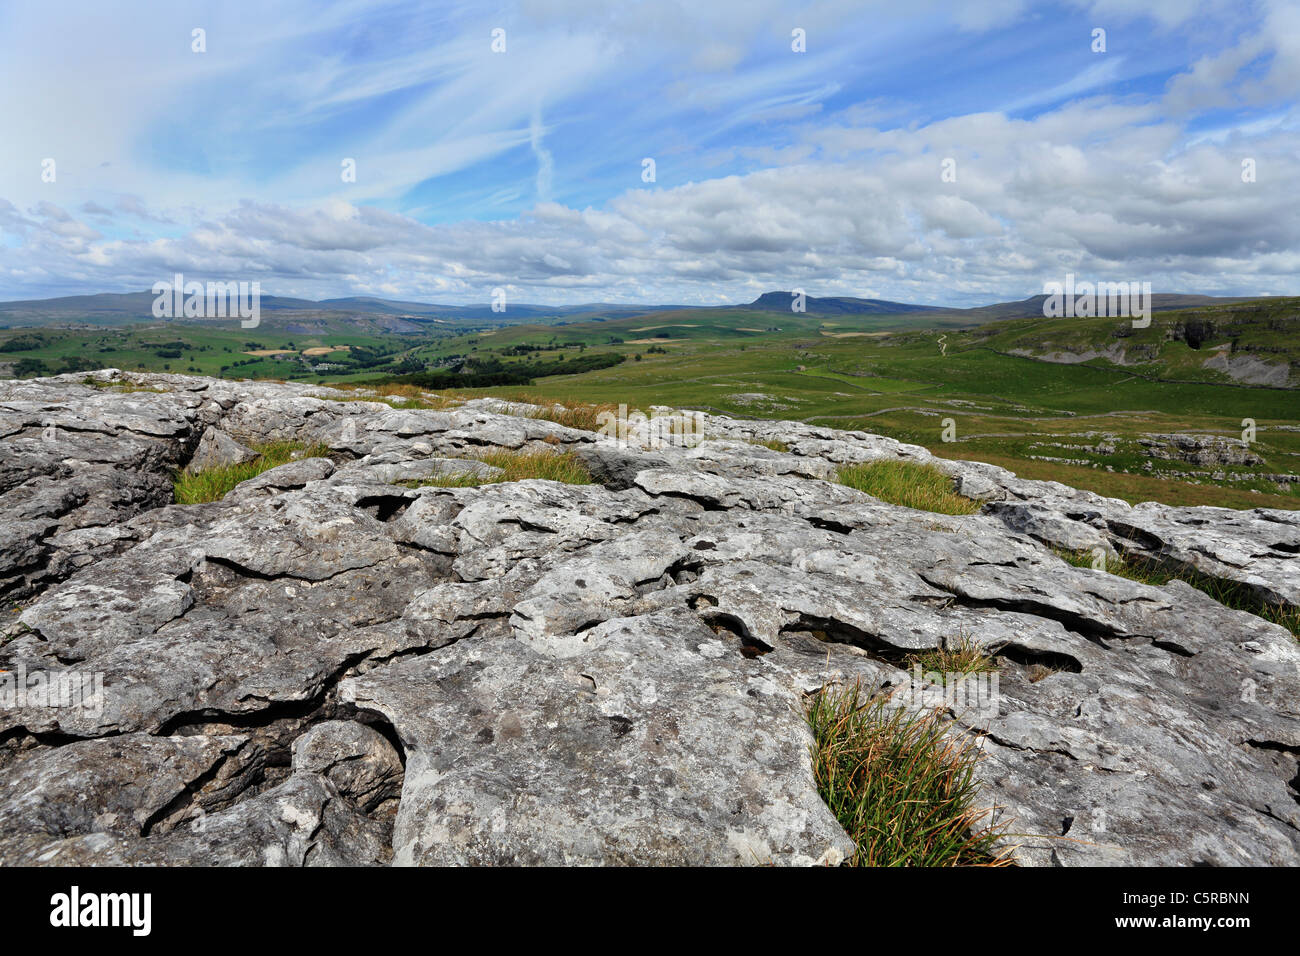 Los tres picos de los valles de Yorkshire y el pavimento de piedra caliza. Victoria cueva puede verse a la derecha, todos parte de una famosa carrera Foto de stock